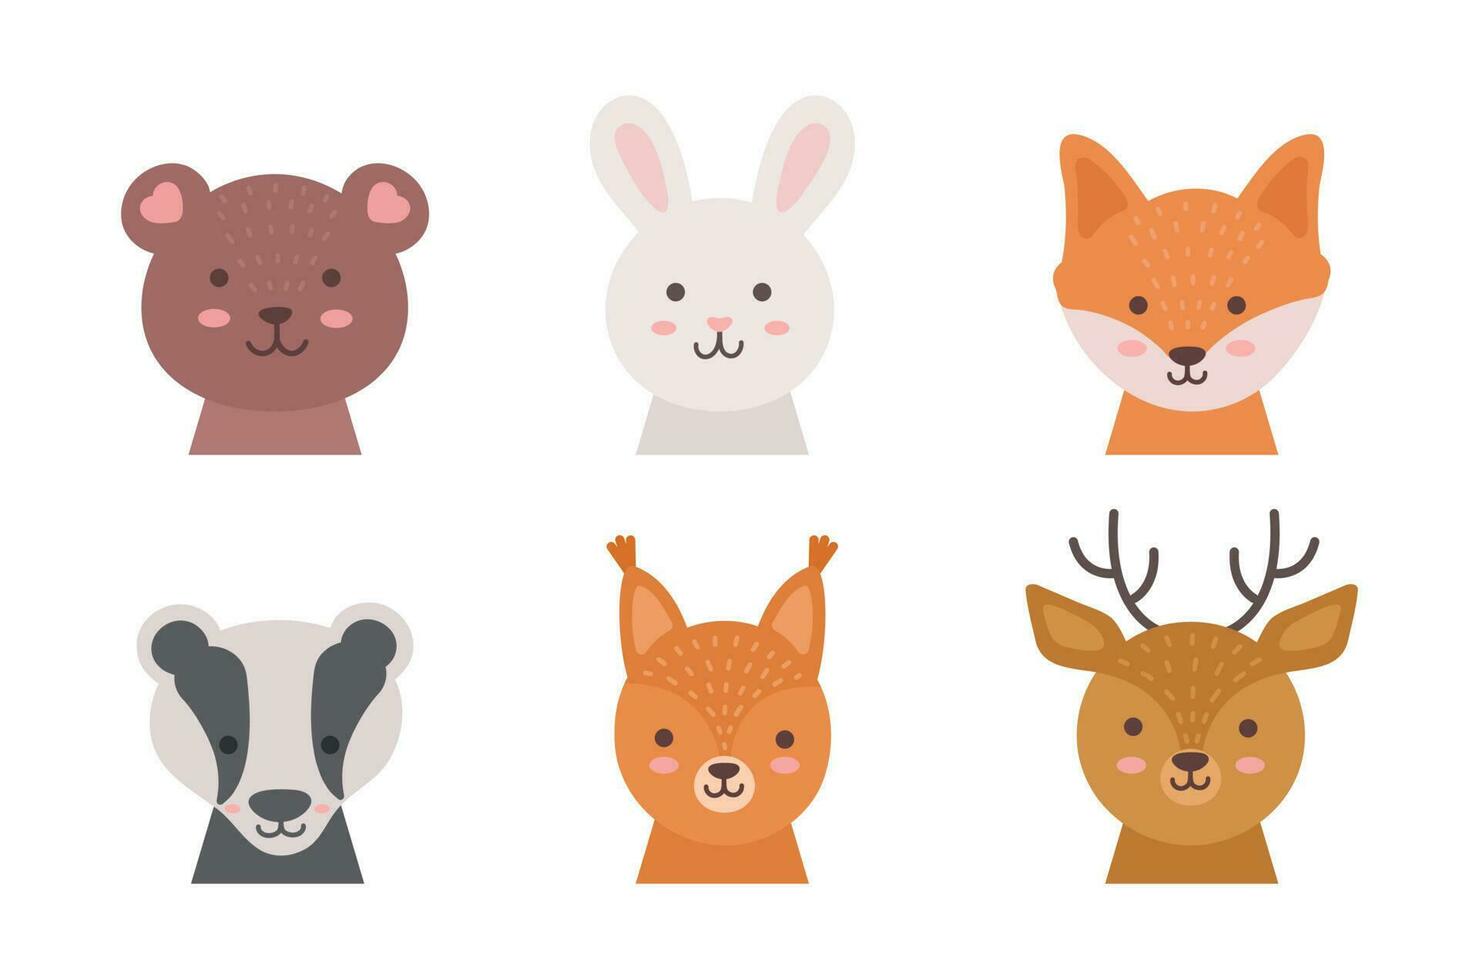 dibujos animados linda bosque animales para para niños saludo tarjetas y invitaciones vector ilustración. zorro, oso, conejito, ardilla, ciervo, tejón.